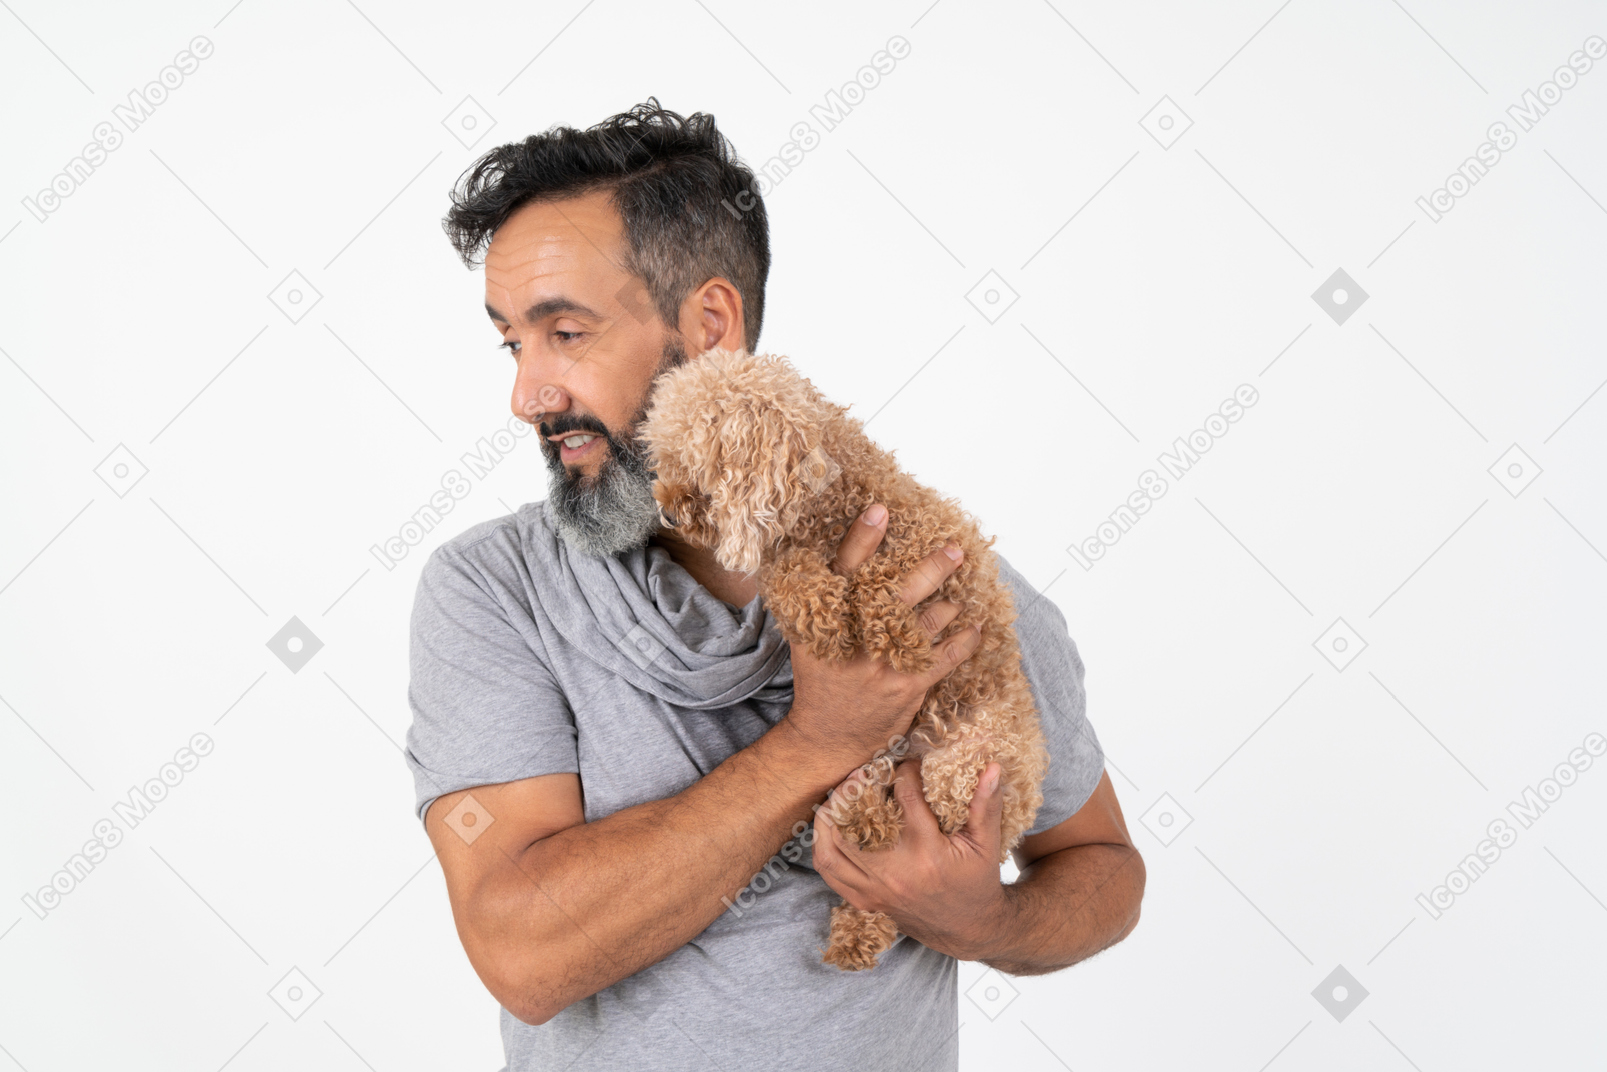 プロファイルに立っていると子犬を保持しているハンサムな中年の男性